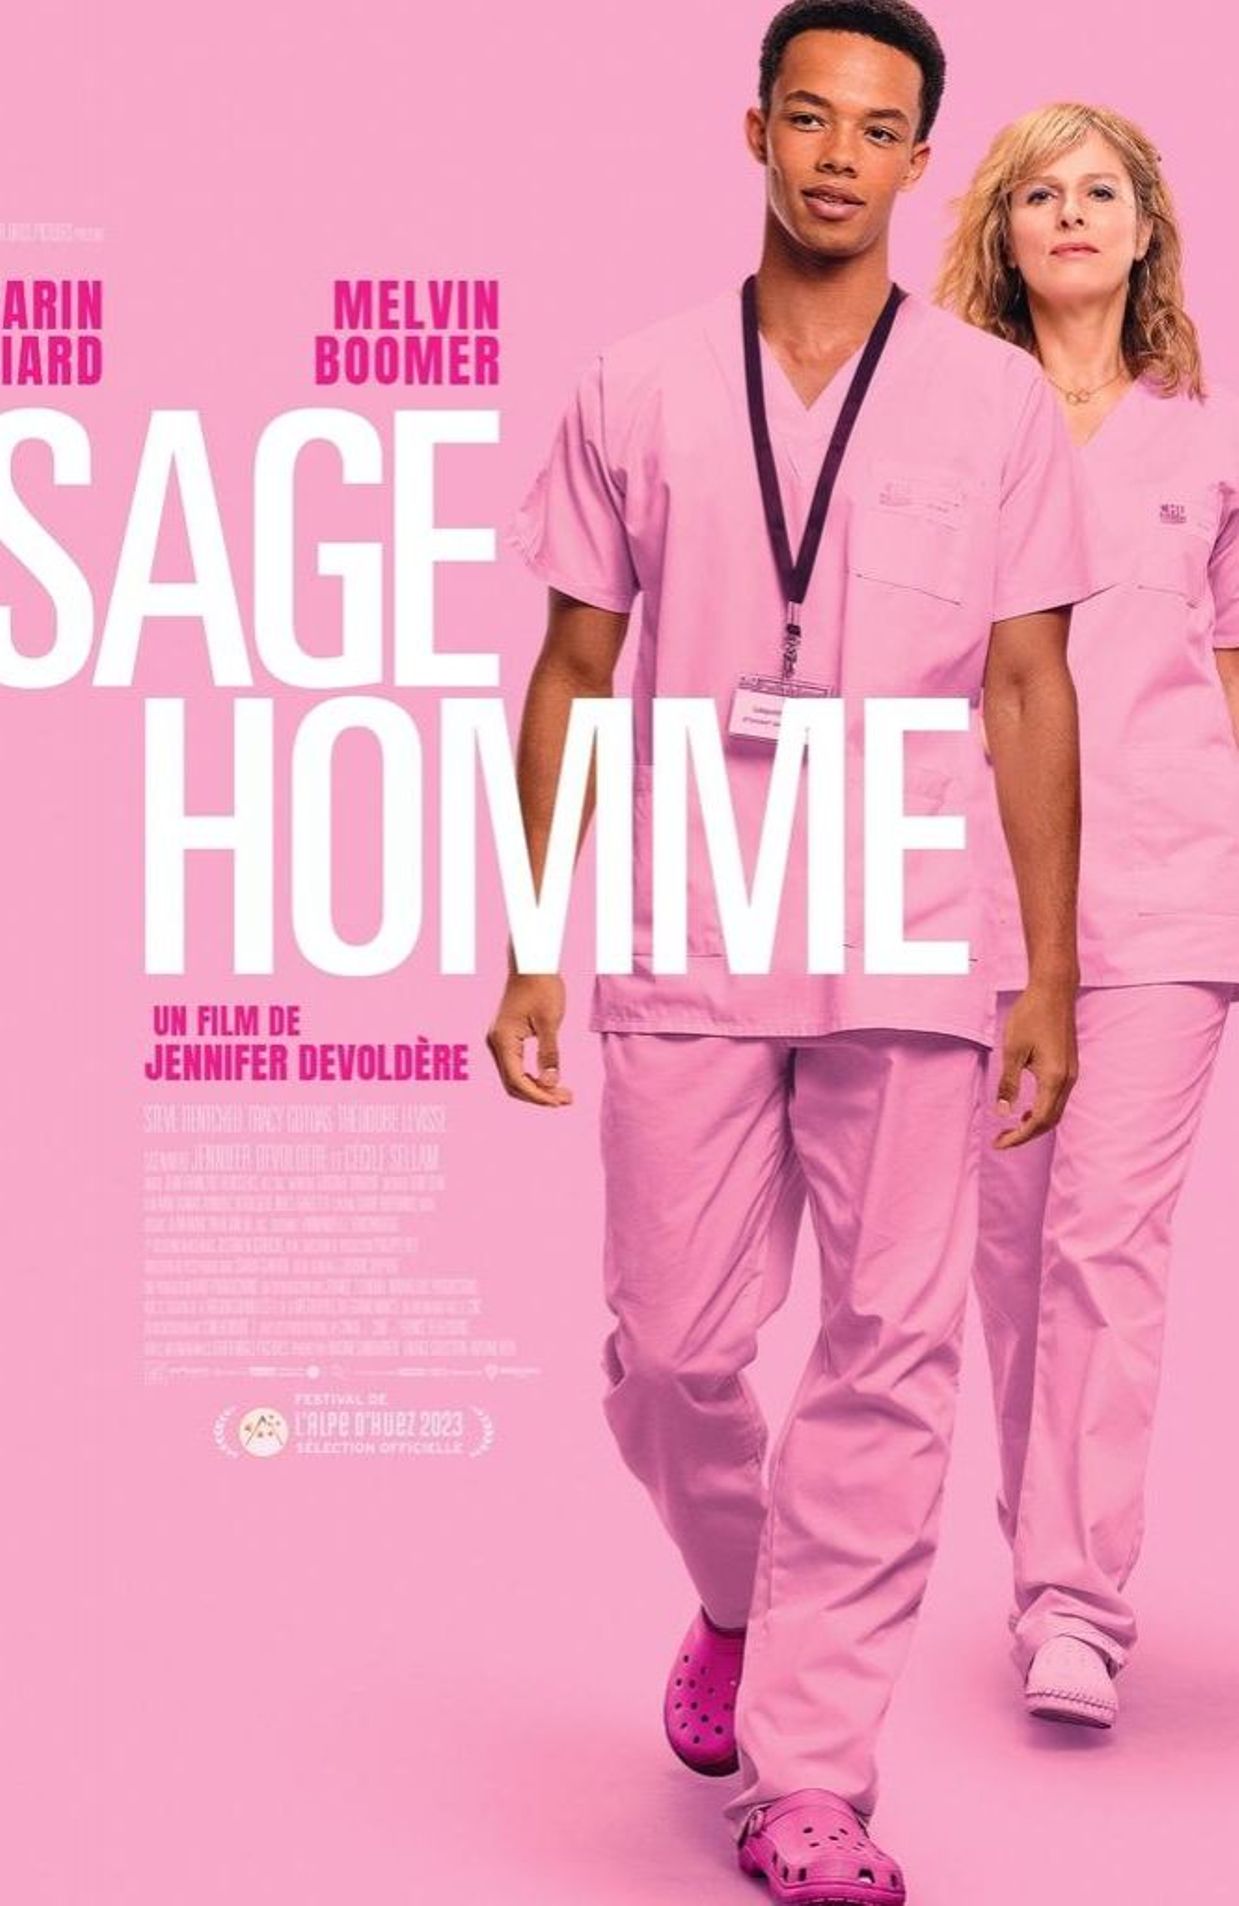 L'affiche de "Sage-Homme"